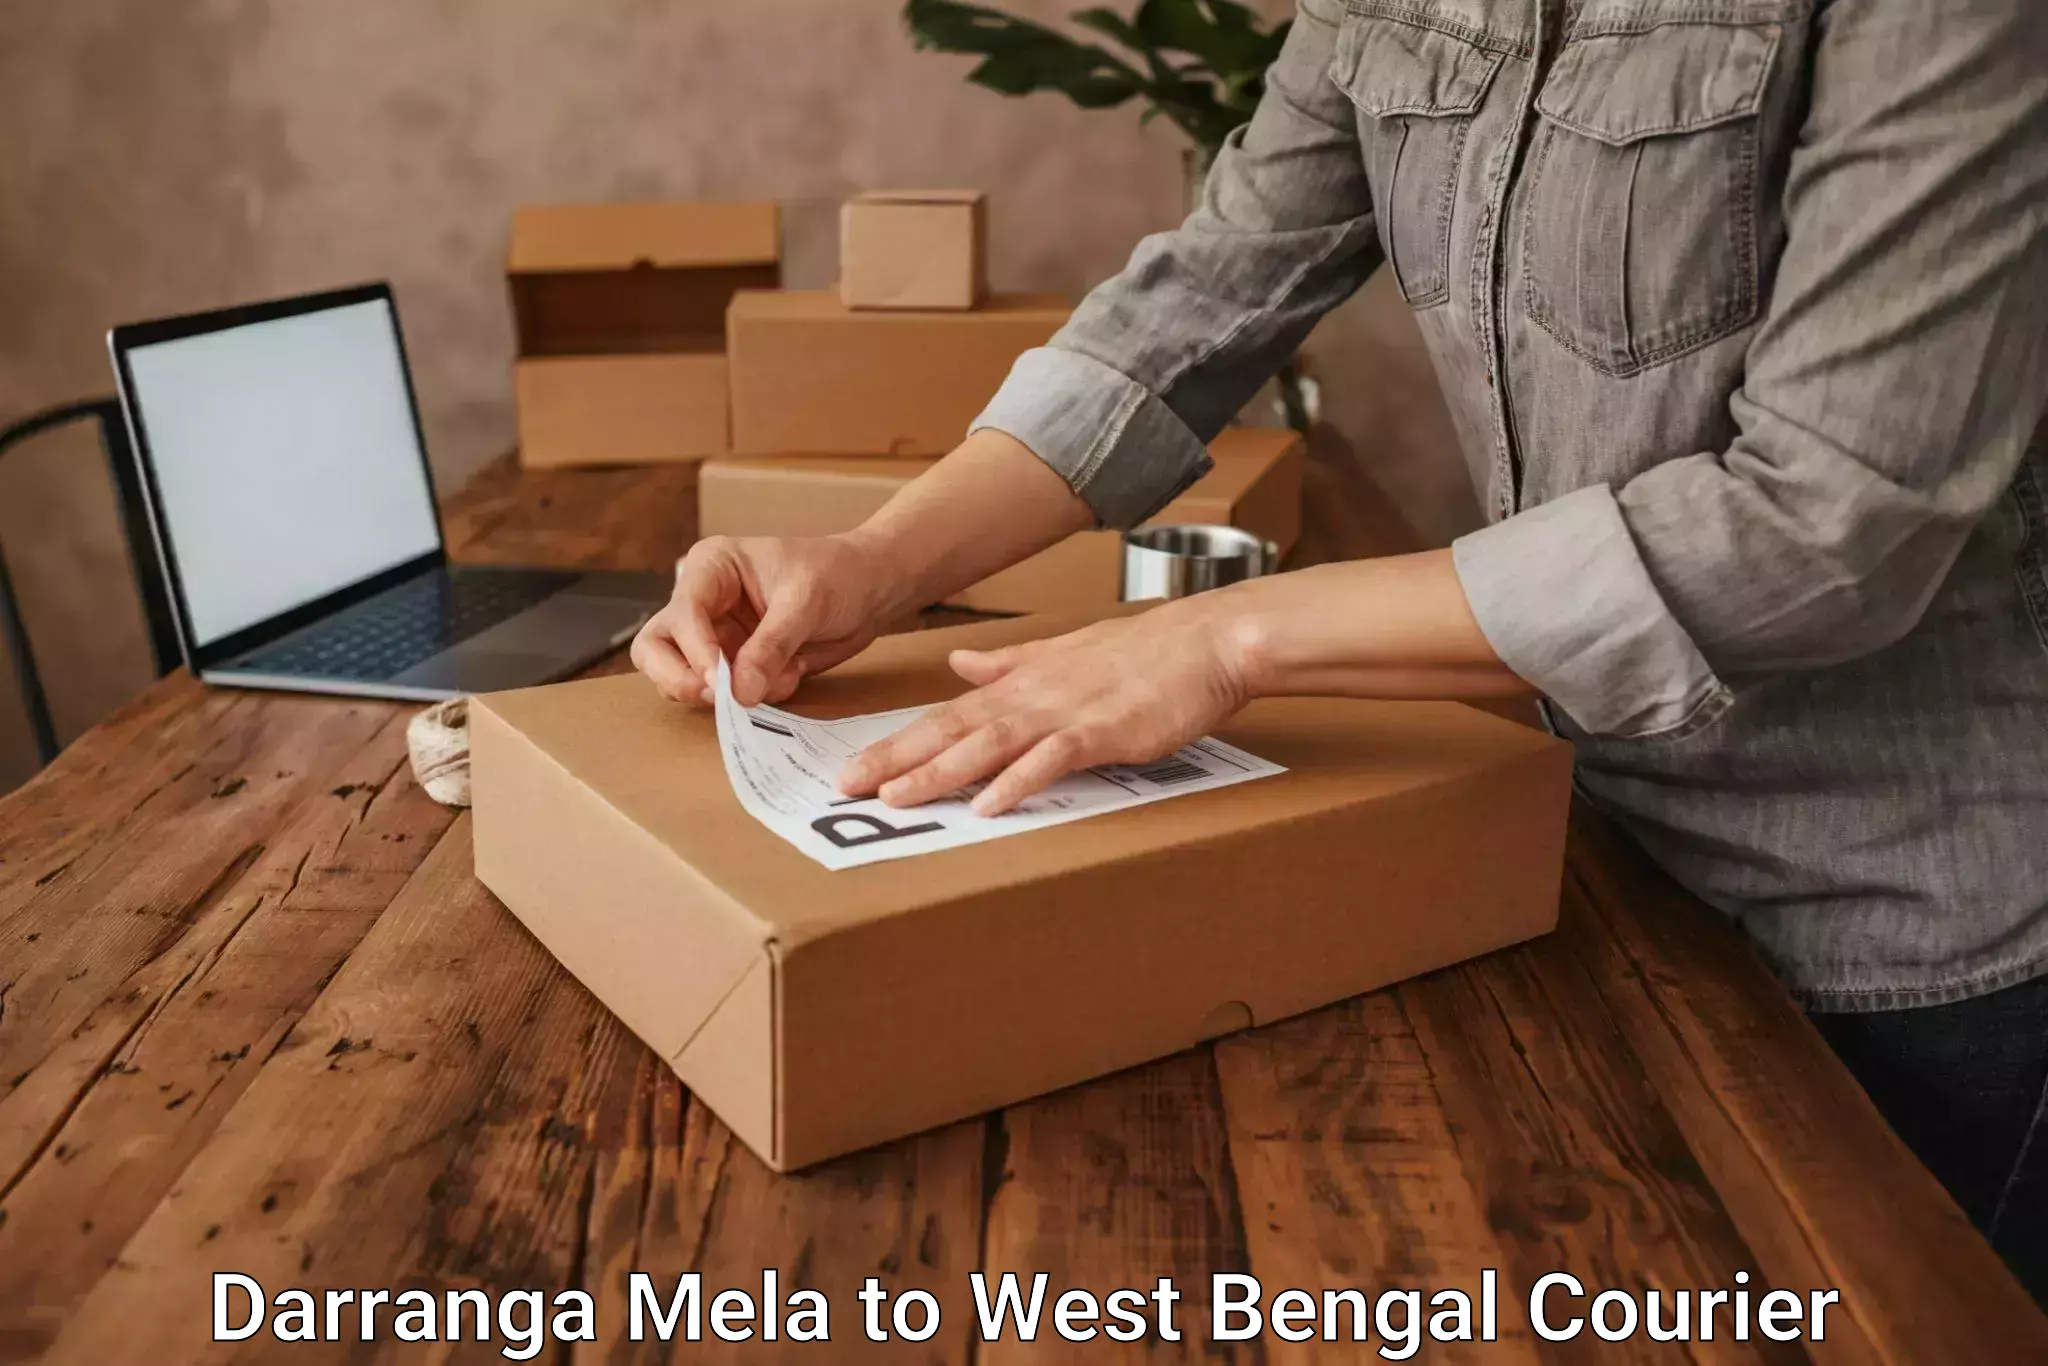 Sustainable shipping practices Darranga Mela to Raniganj